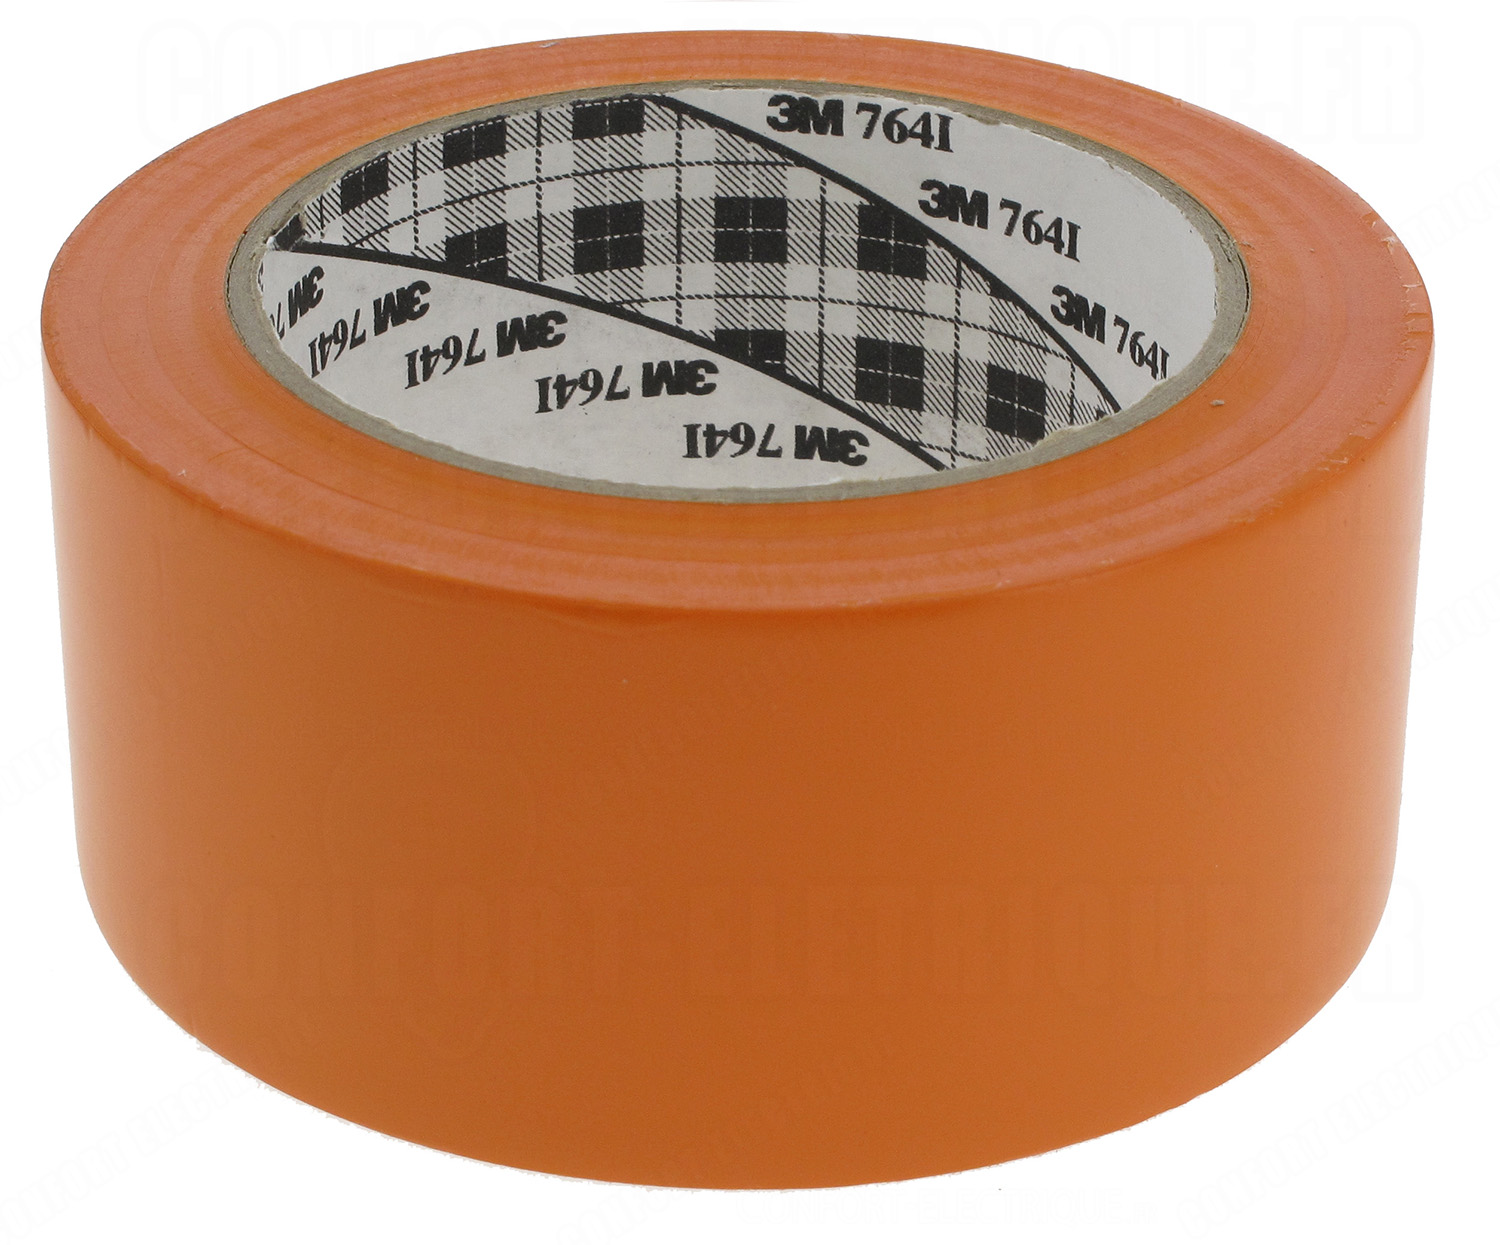 Scotch vinyle 3M 764I Orange largeur 50 mm - 19,33€